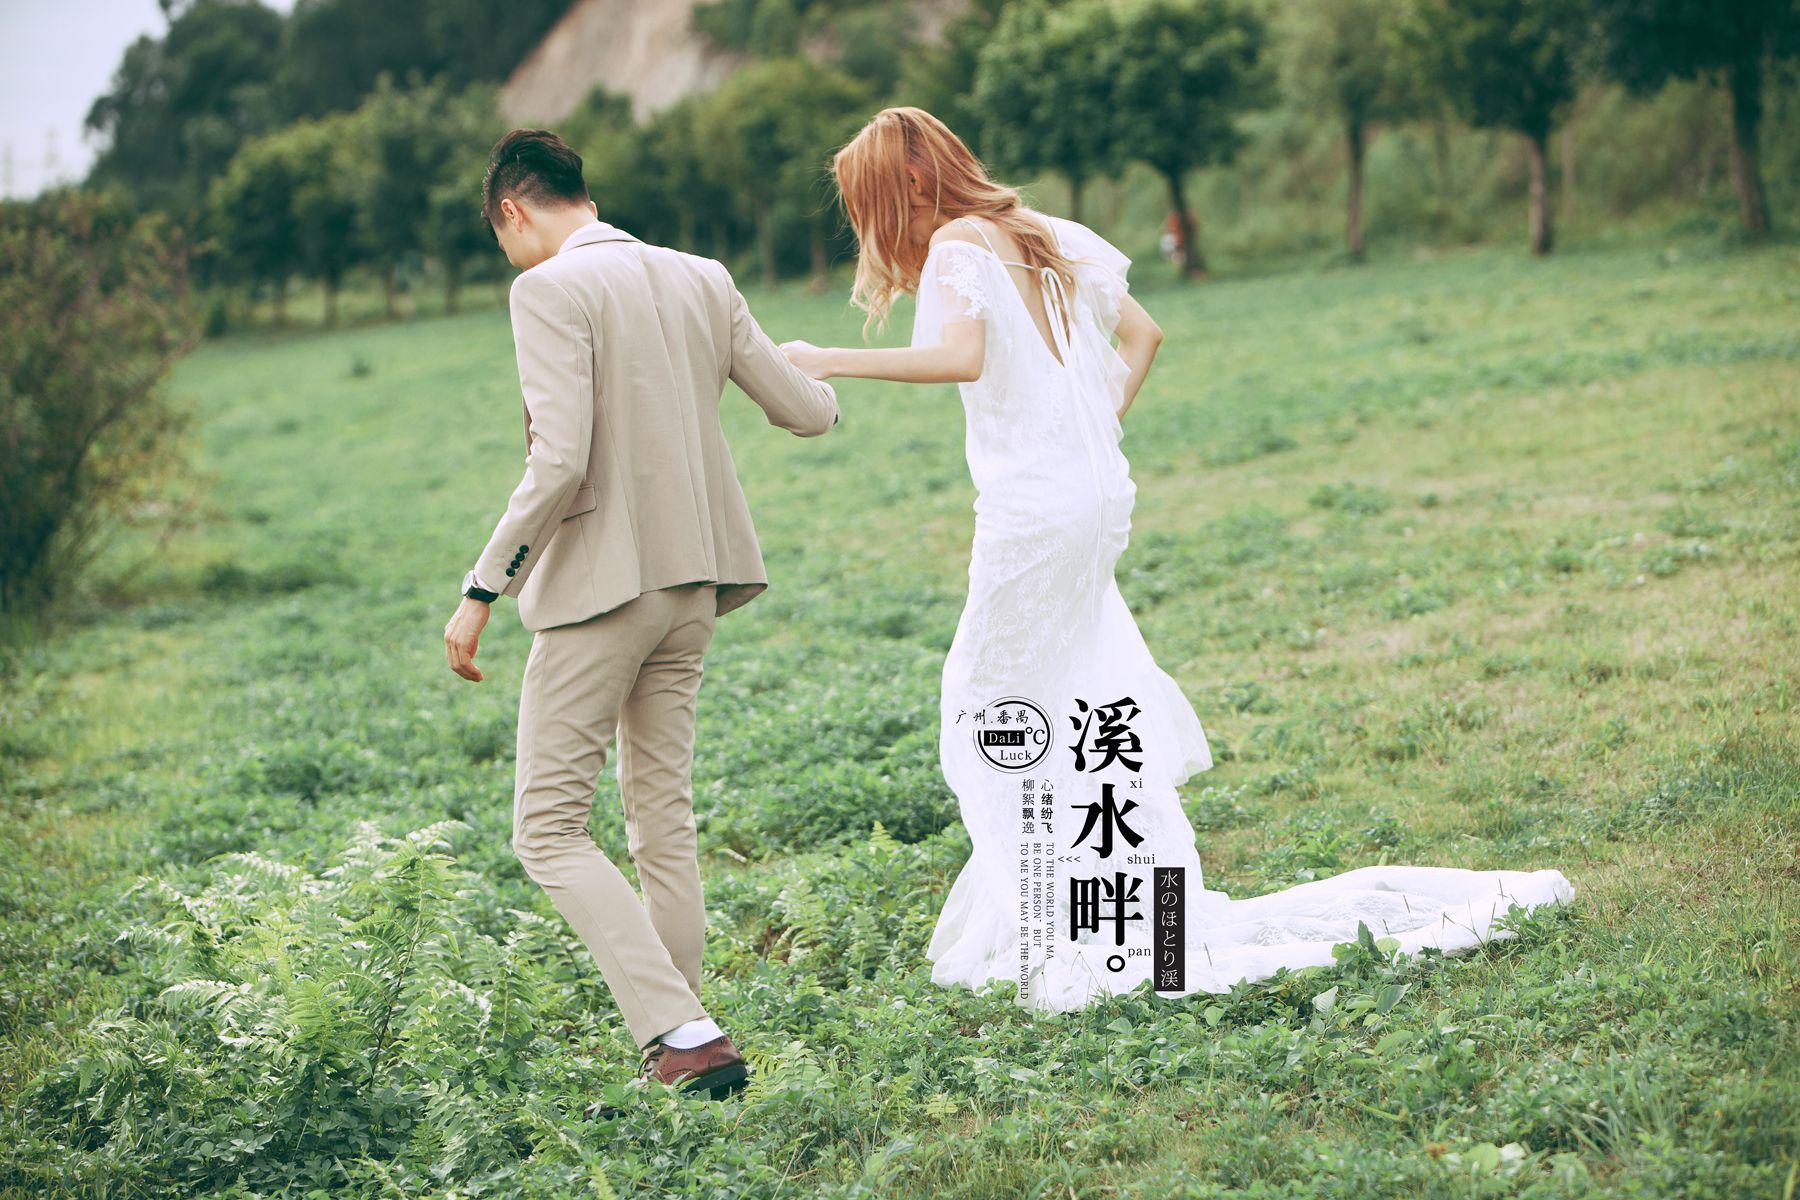 2017年7月广州婚纱照,清远婚纱照,婚纱照图片